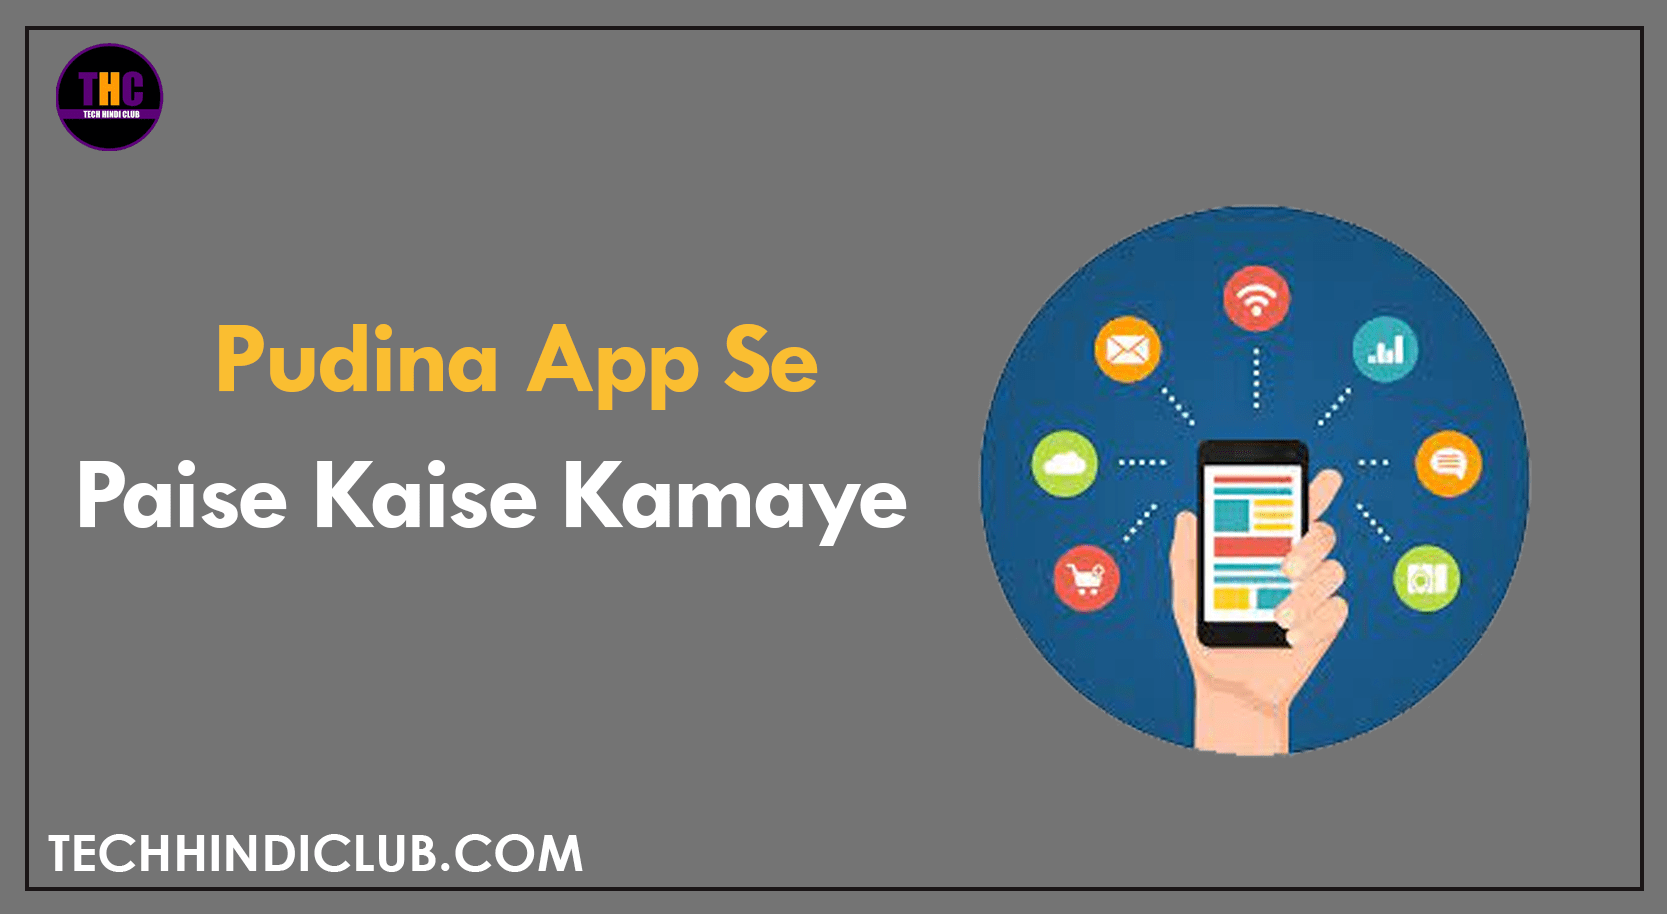 Pudina Android App Se Paise Kaise Kamaye